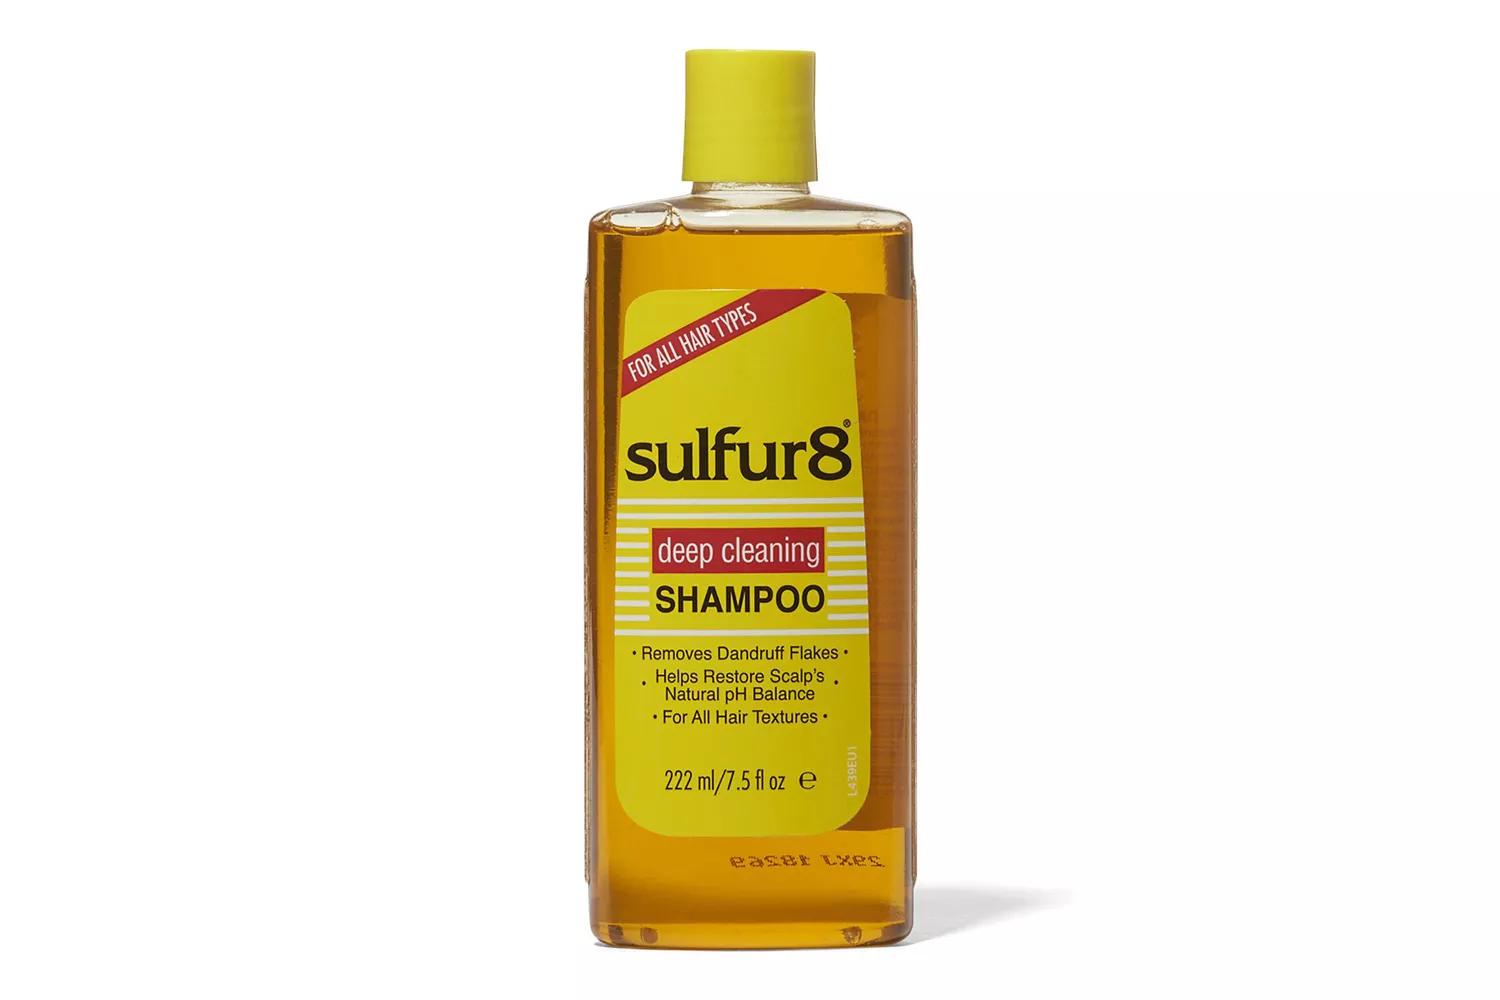 Sulfur8 Deep Cleaning Shampoo